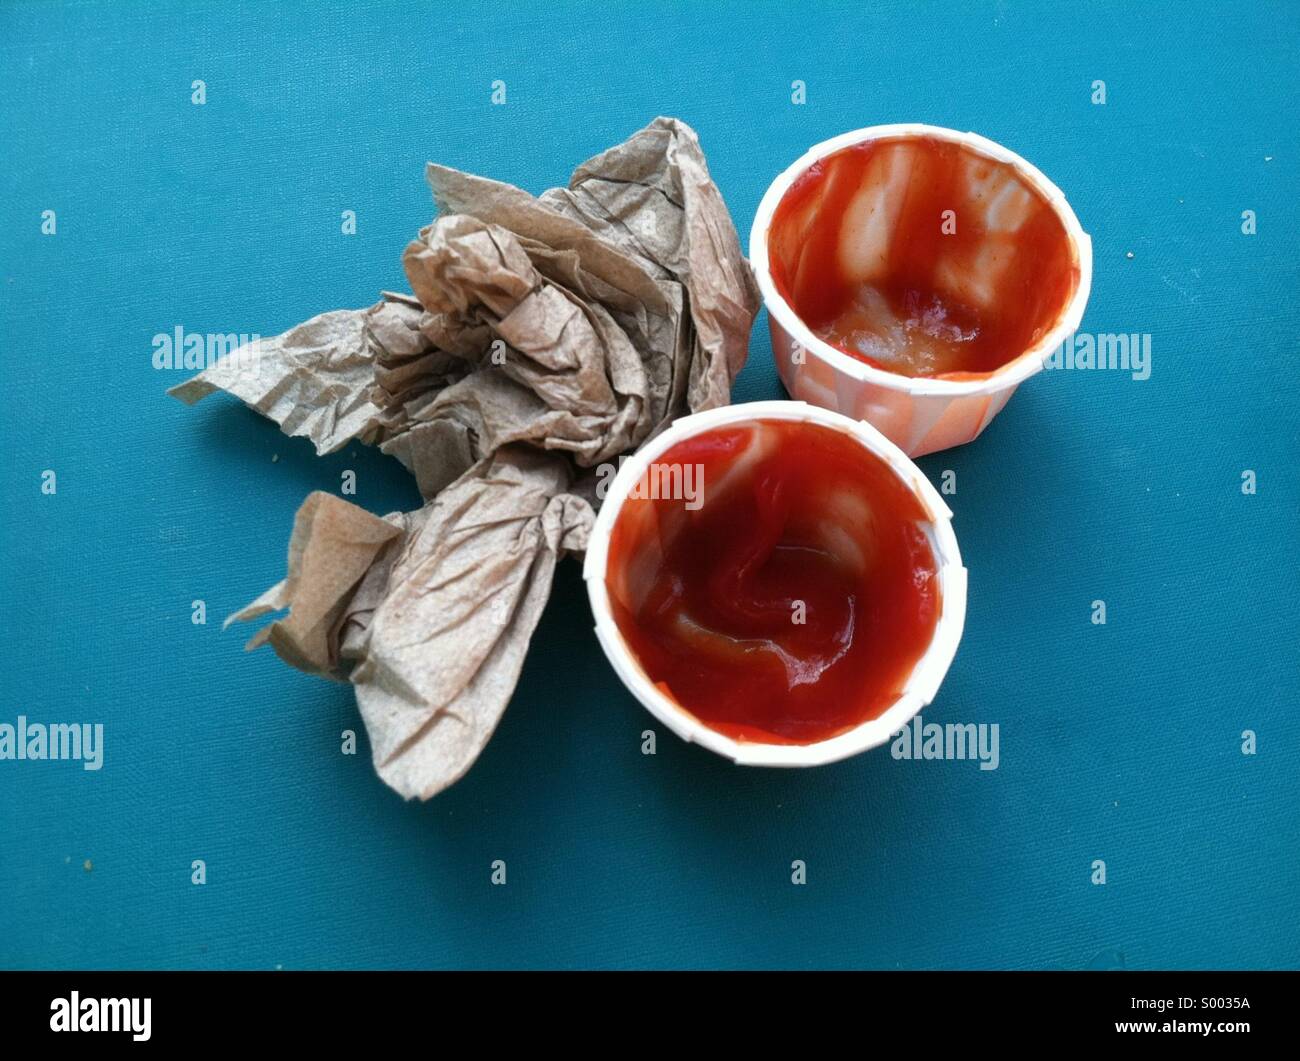 Deux contenants de ketchup et une serviette froissée Banque D'Images